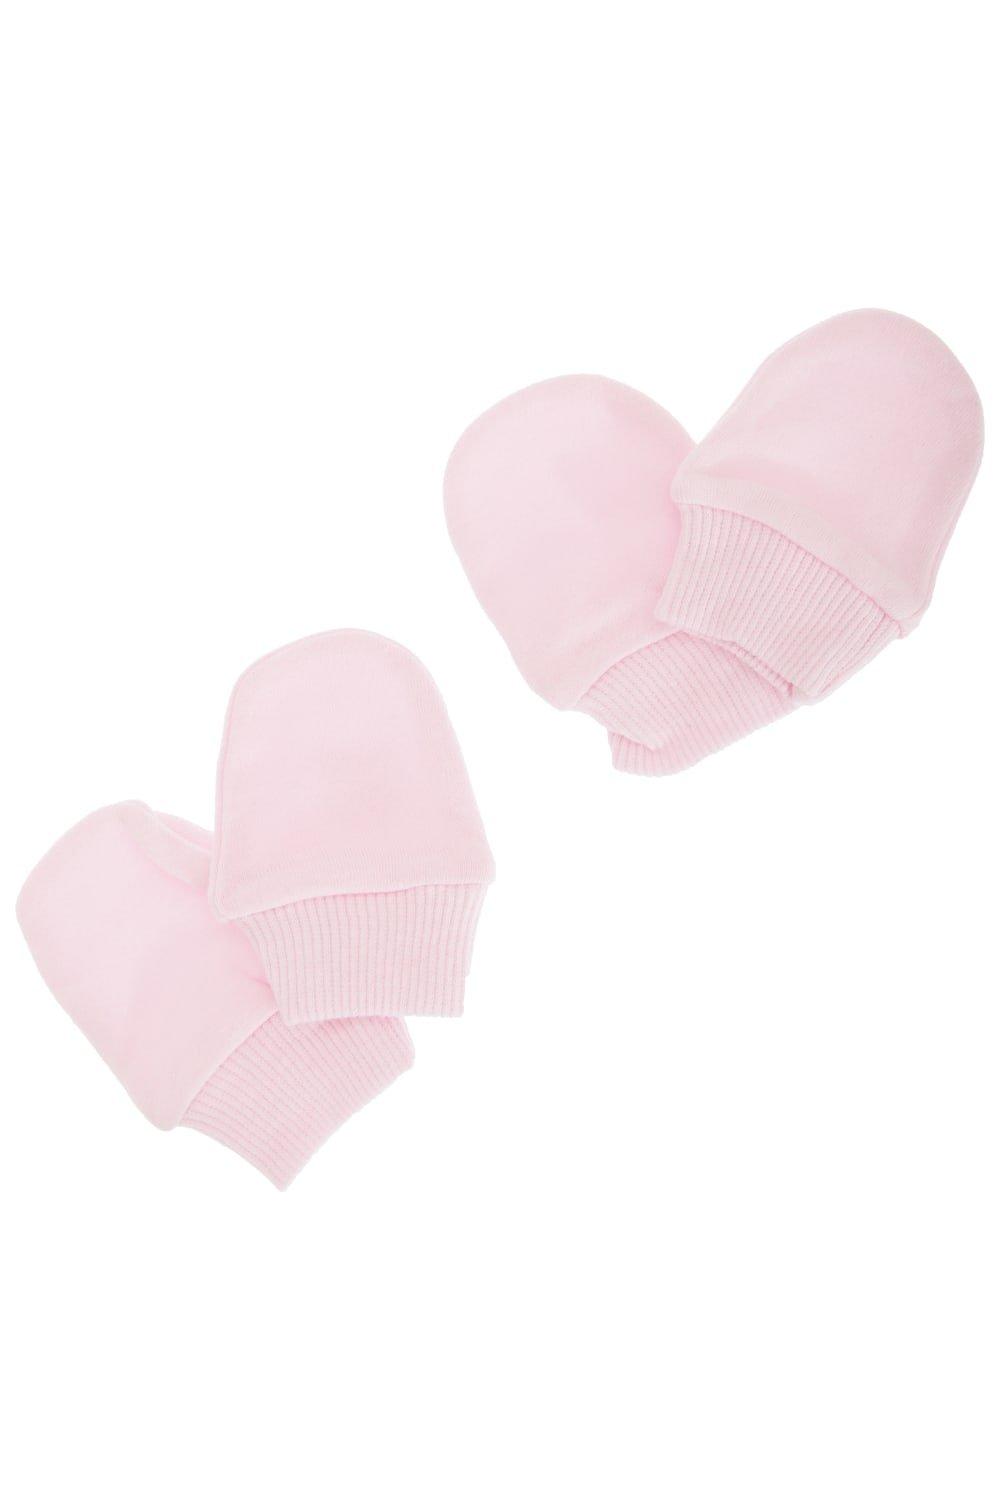 Эластичные варежки для новорожденных из 100% хлопка (2 пары в упаковке) Universal Textiles, розовый